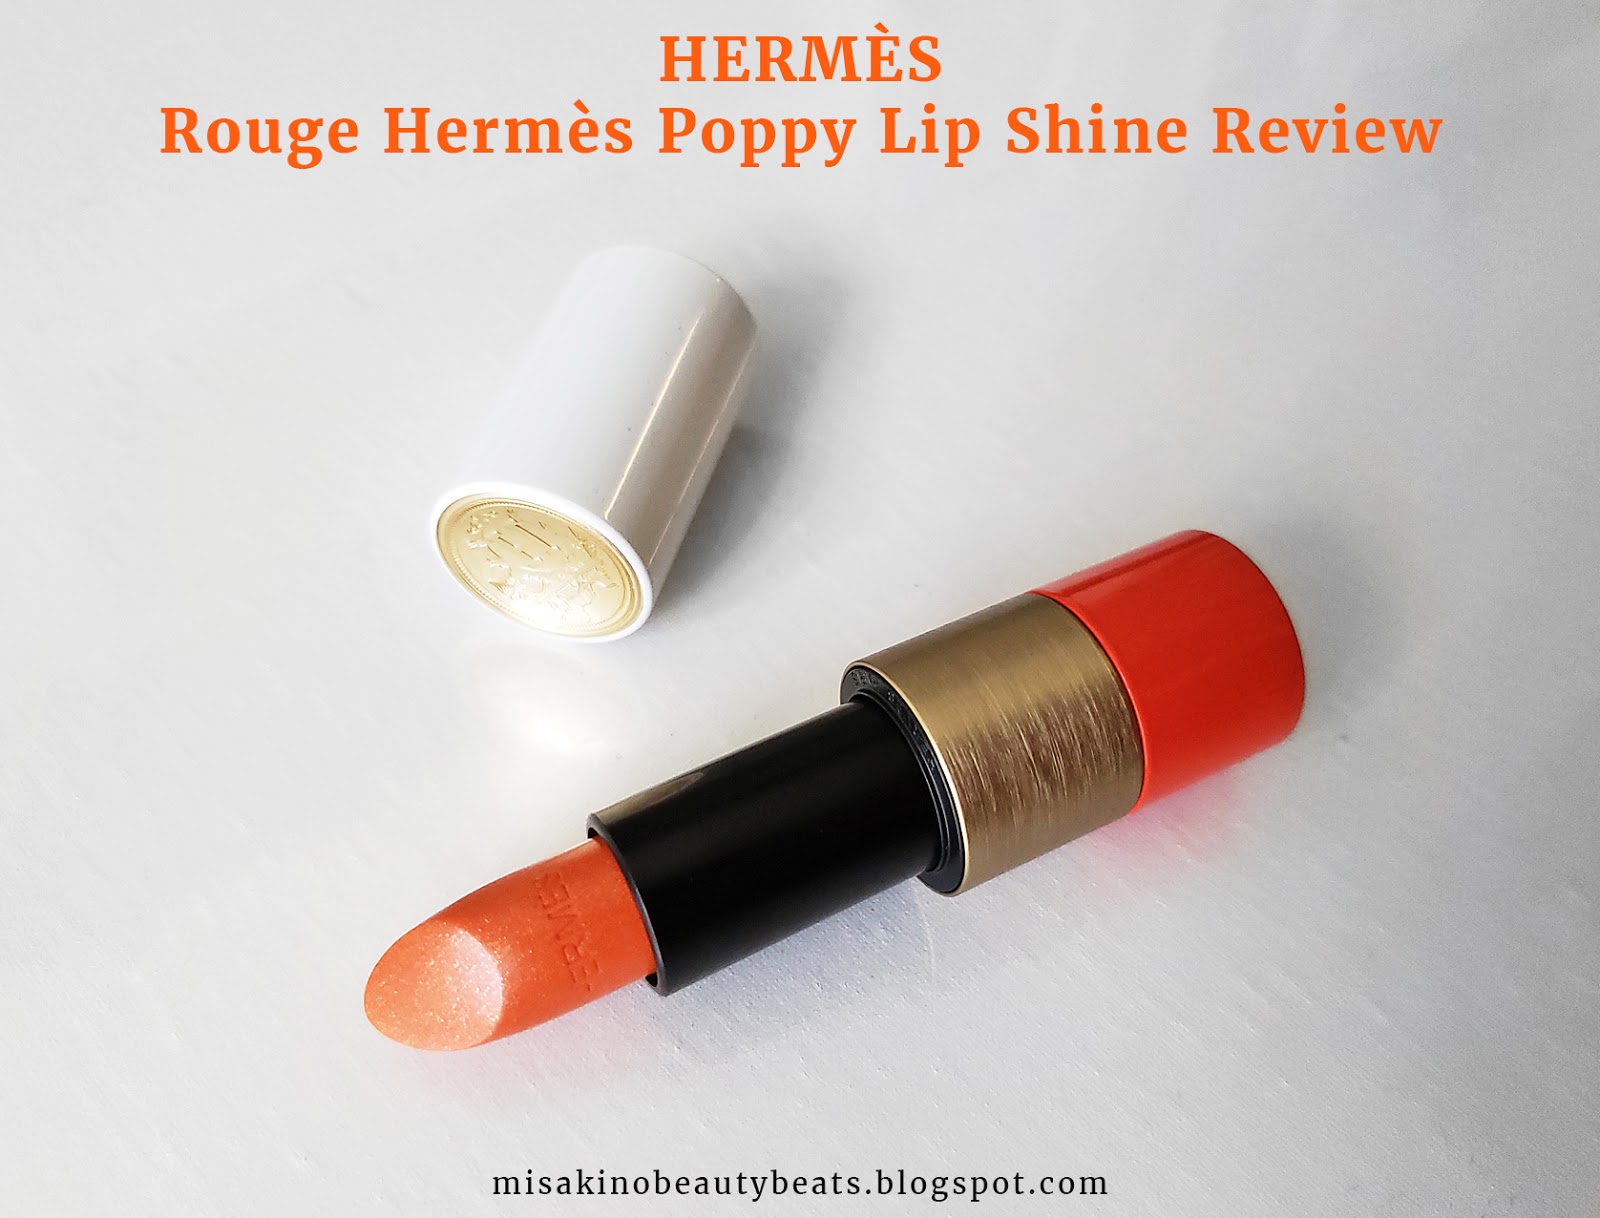 Hermes Rouge Hermes Poppy Lip Shine